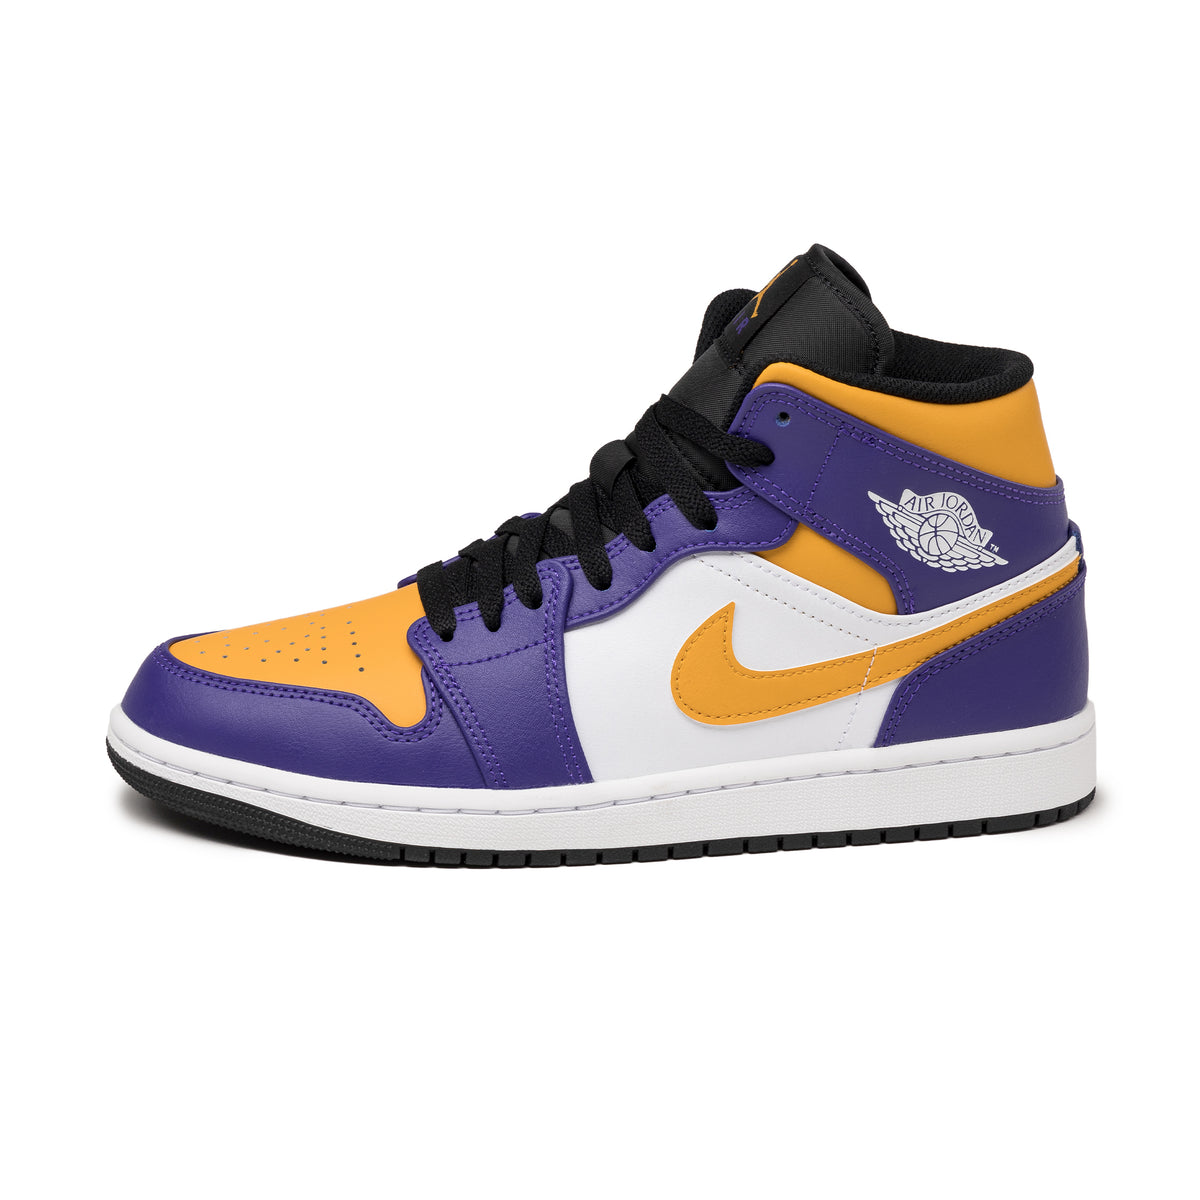 Nike Air Jordan 1 Mid *Lakers* – buy now at Asphaltgold Online Store!